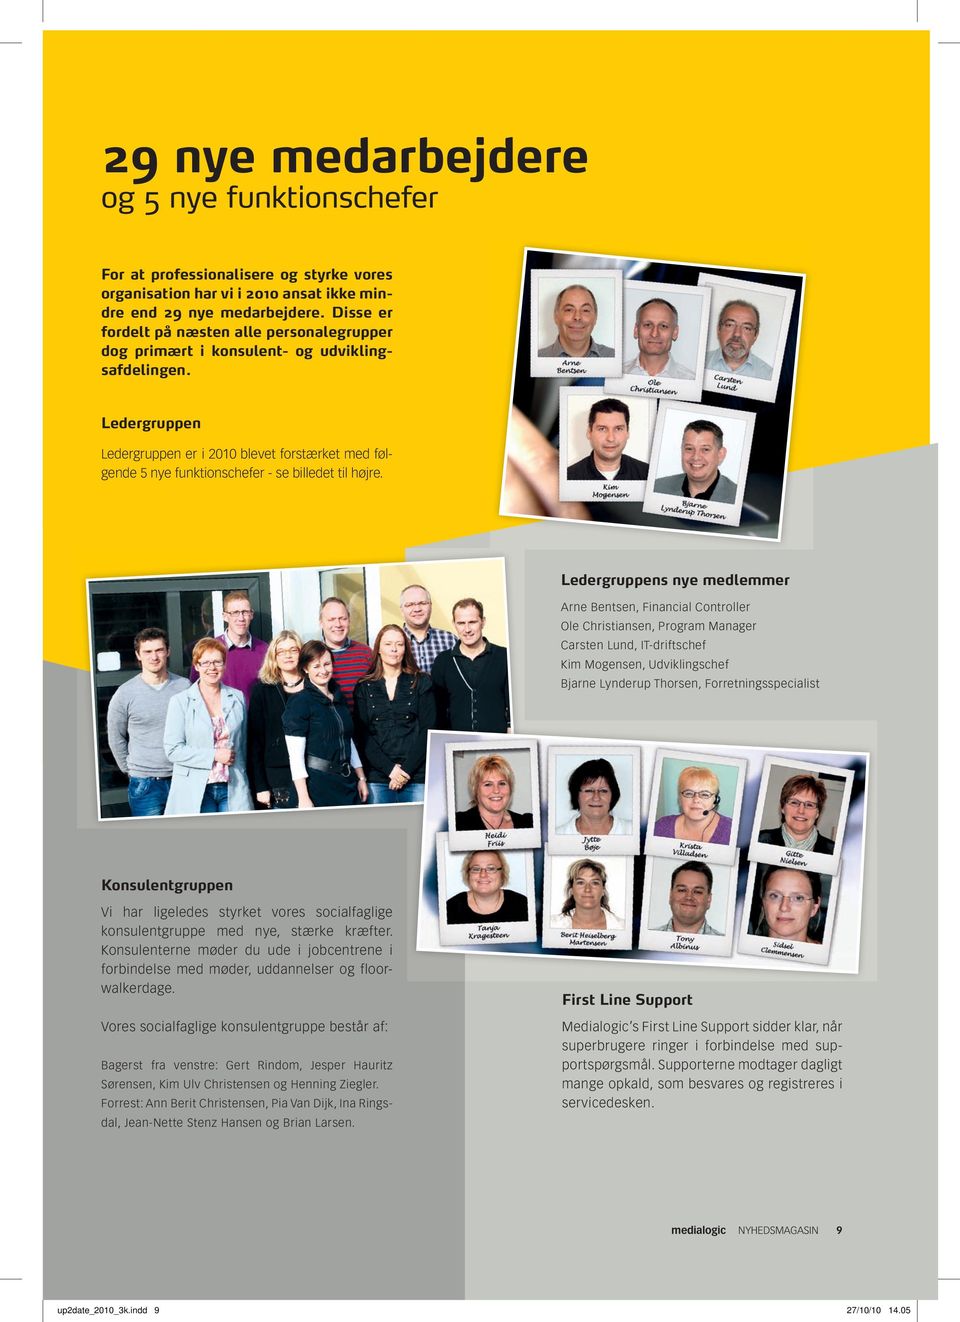 Ledergruppen Ledergruppen er i 2010 blevet forstærket med følgende 5 nye funktionschefer - se billedet til højre.